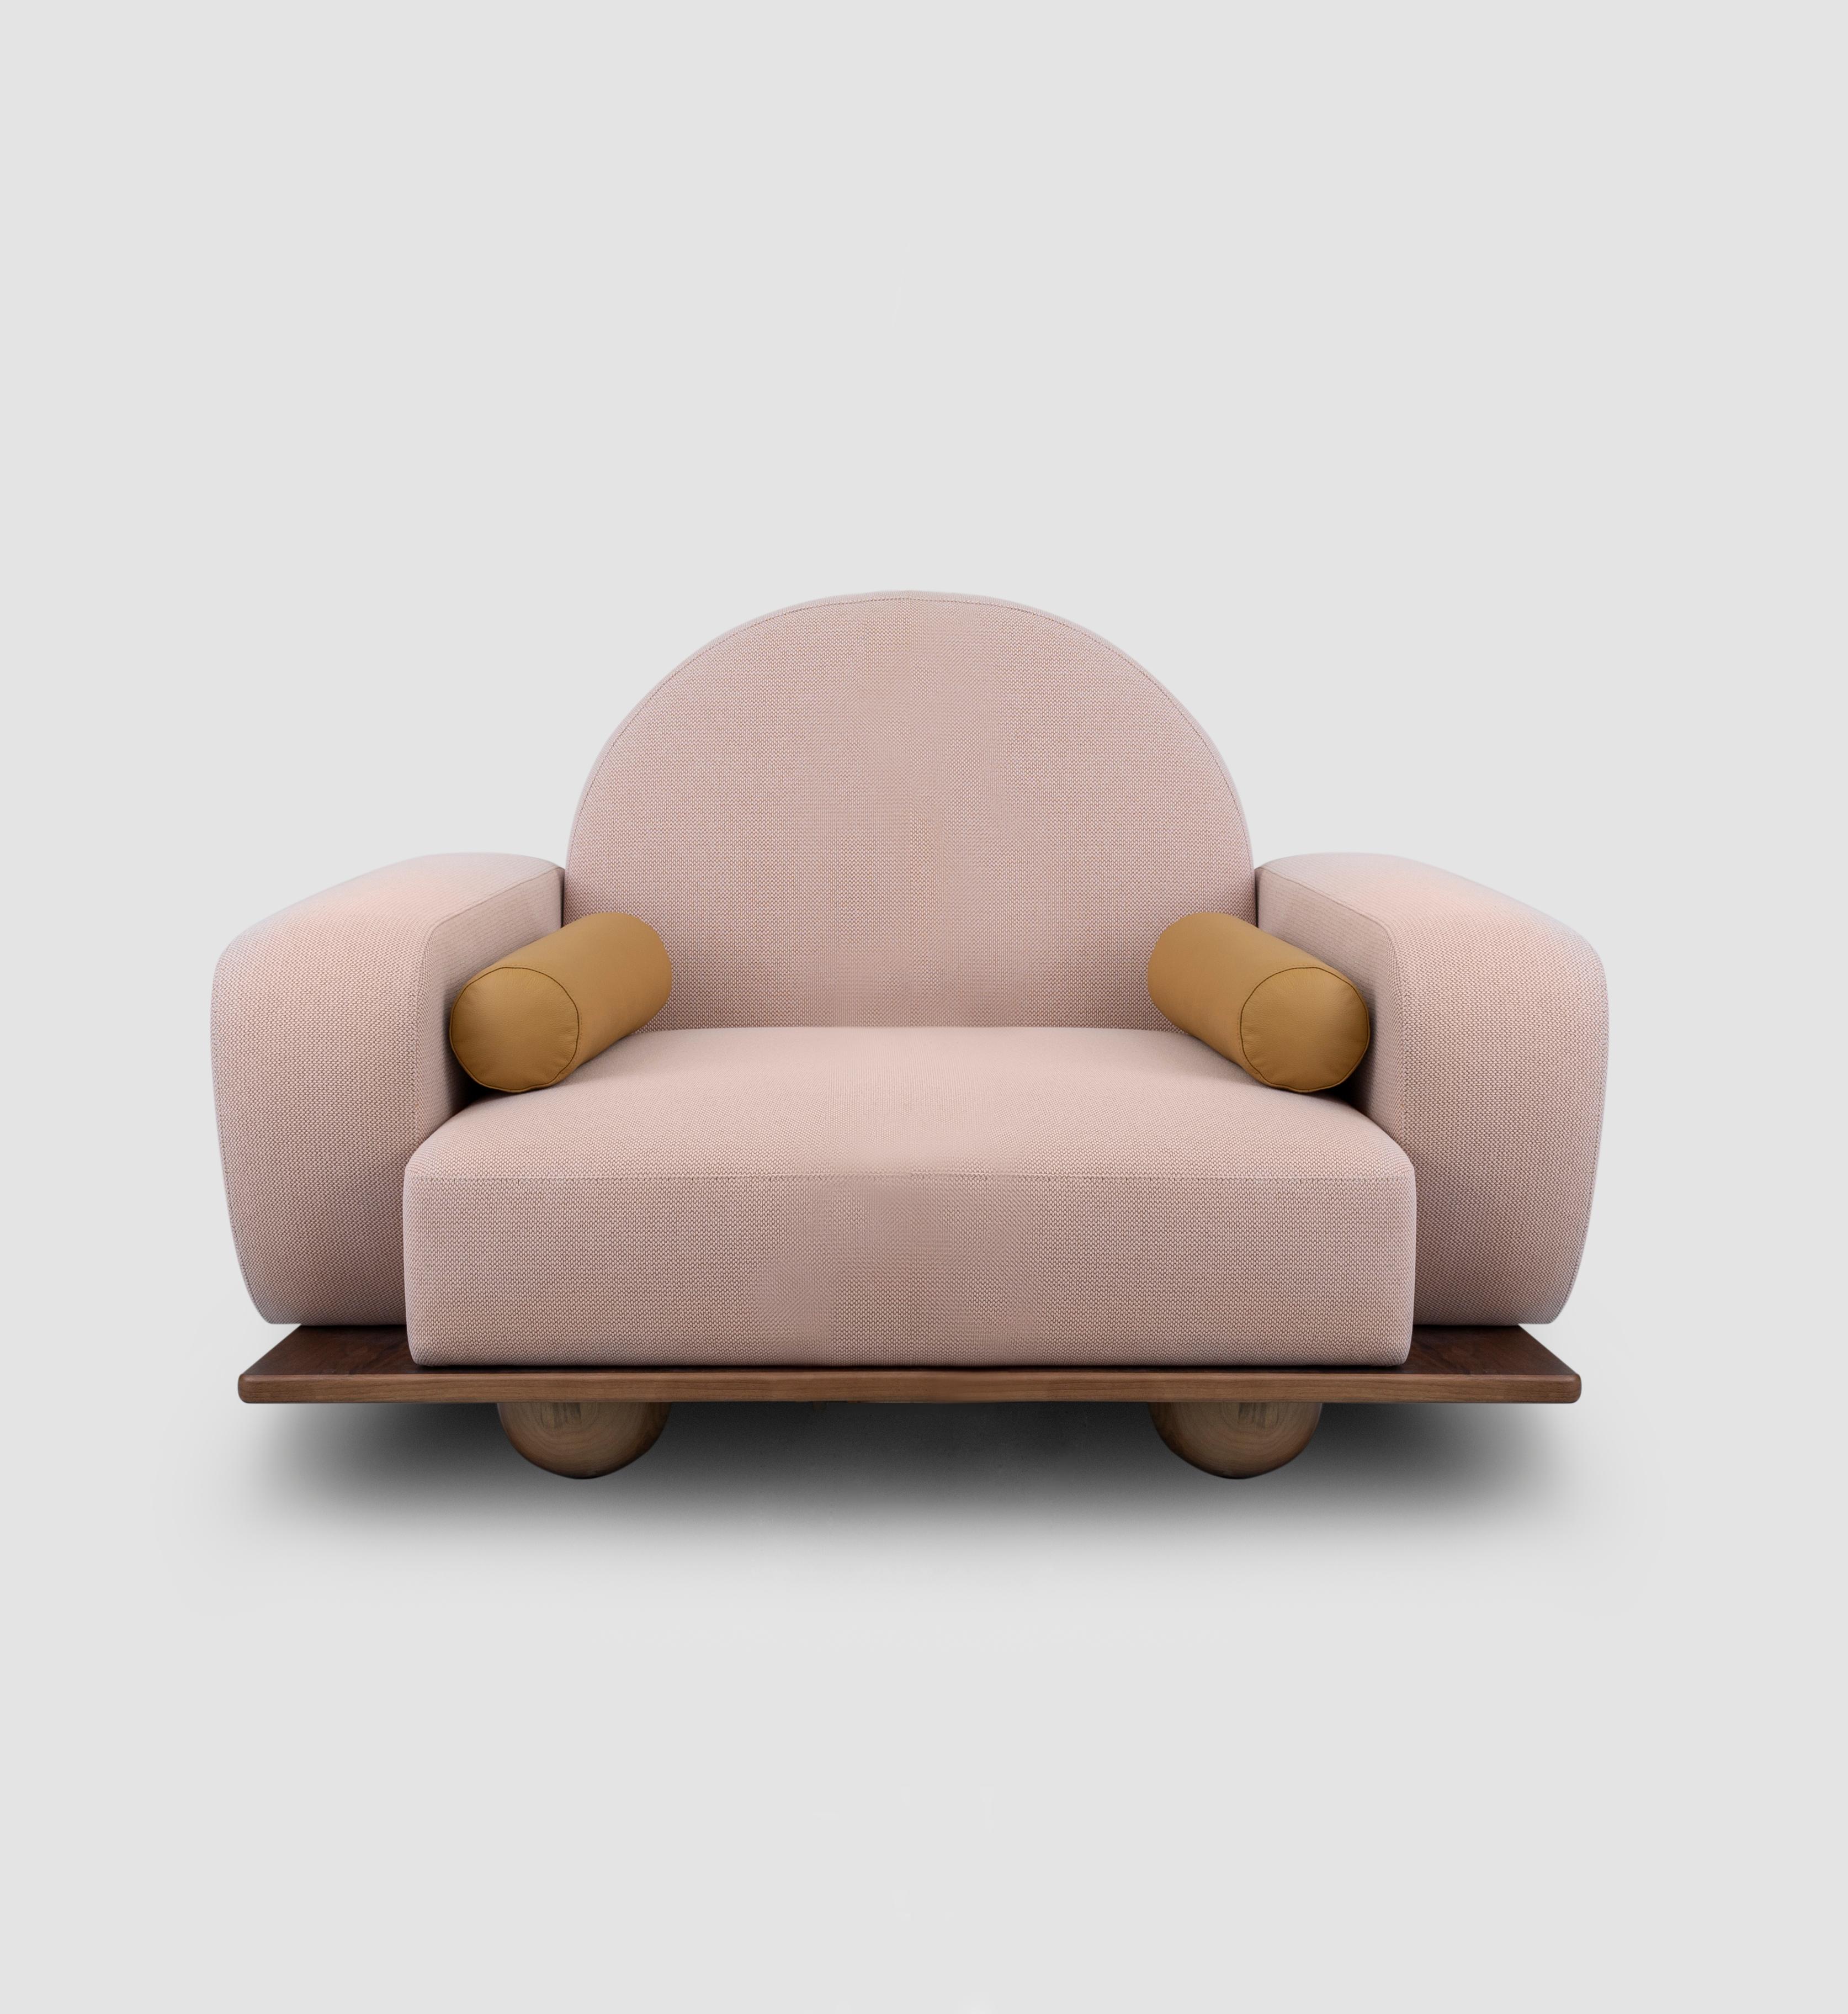 Der Sessel Beice ist so gestaltet, dass er das Gefühl vermittelt, auf einer Zuckerwattewolke zu sitzen. Die Kombination aus seiner Farbe, der bogenförmigen Rückenlehne, den runden Kanten und den Kugelfüßen aus Nussbaumholz schafft ein verträumtes,